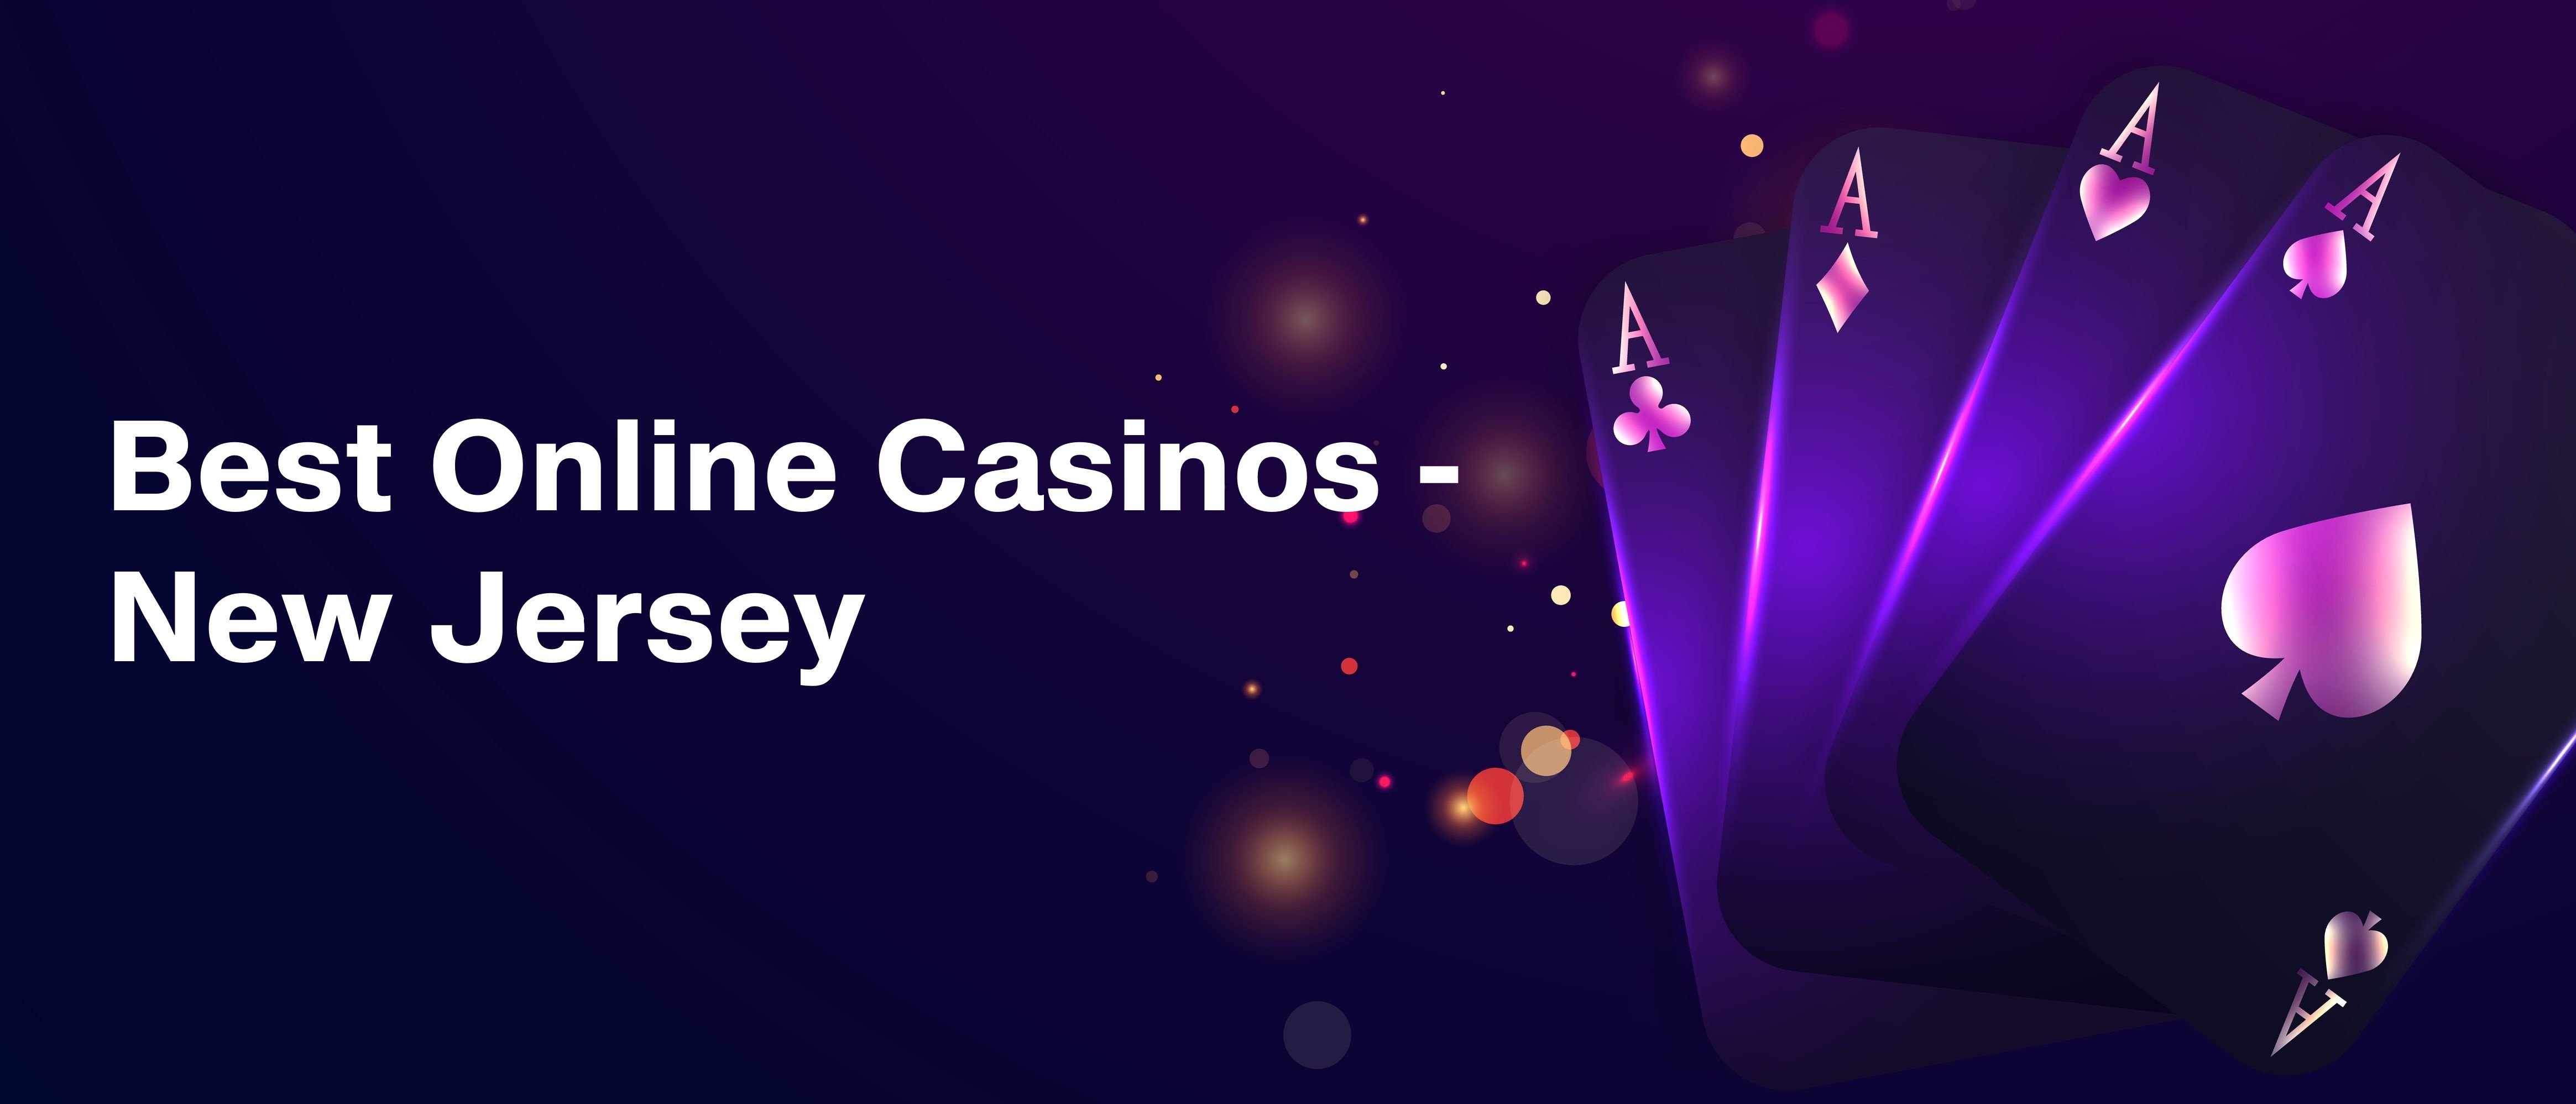 Best Online Casinos NJ